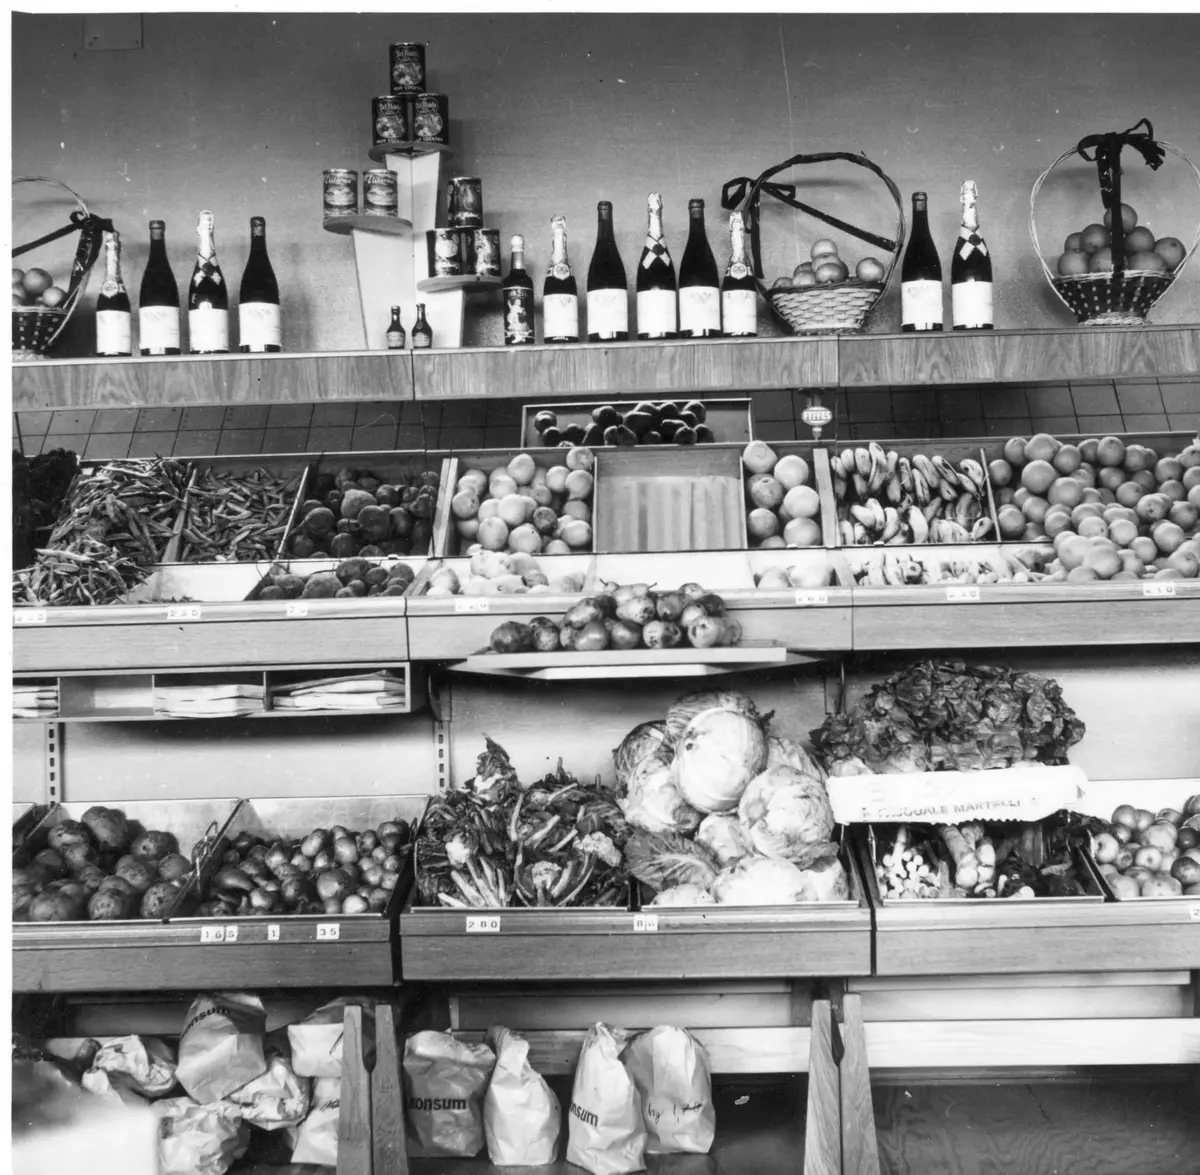 Konsum Sanda. Sulfo, Mimosa, Persil, Henko, Radion och Tomteskur. 50-talets tvätt- och rengöringsmedel.

Fler interiörer på följande bilder.